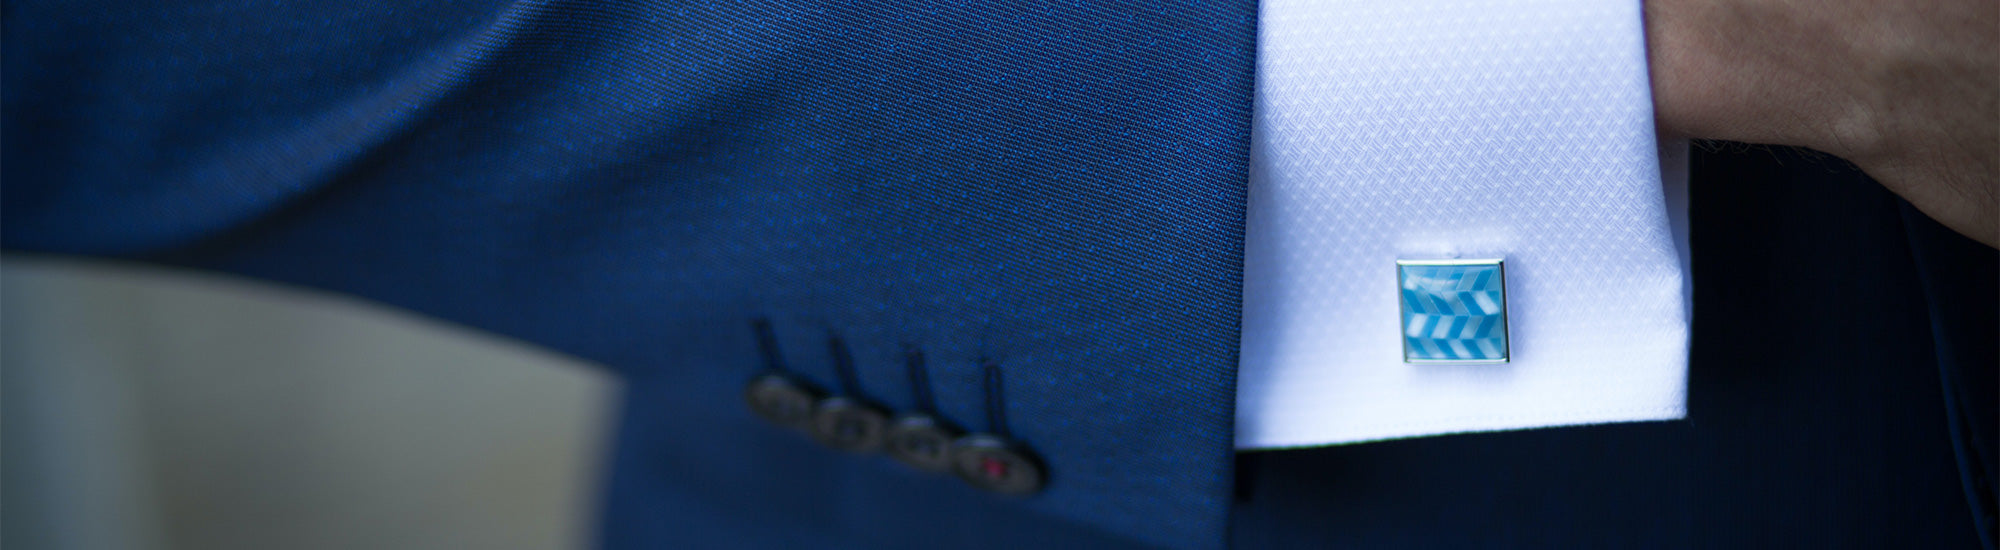 close-up of blue suit